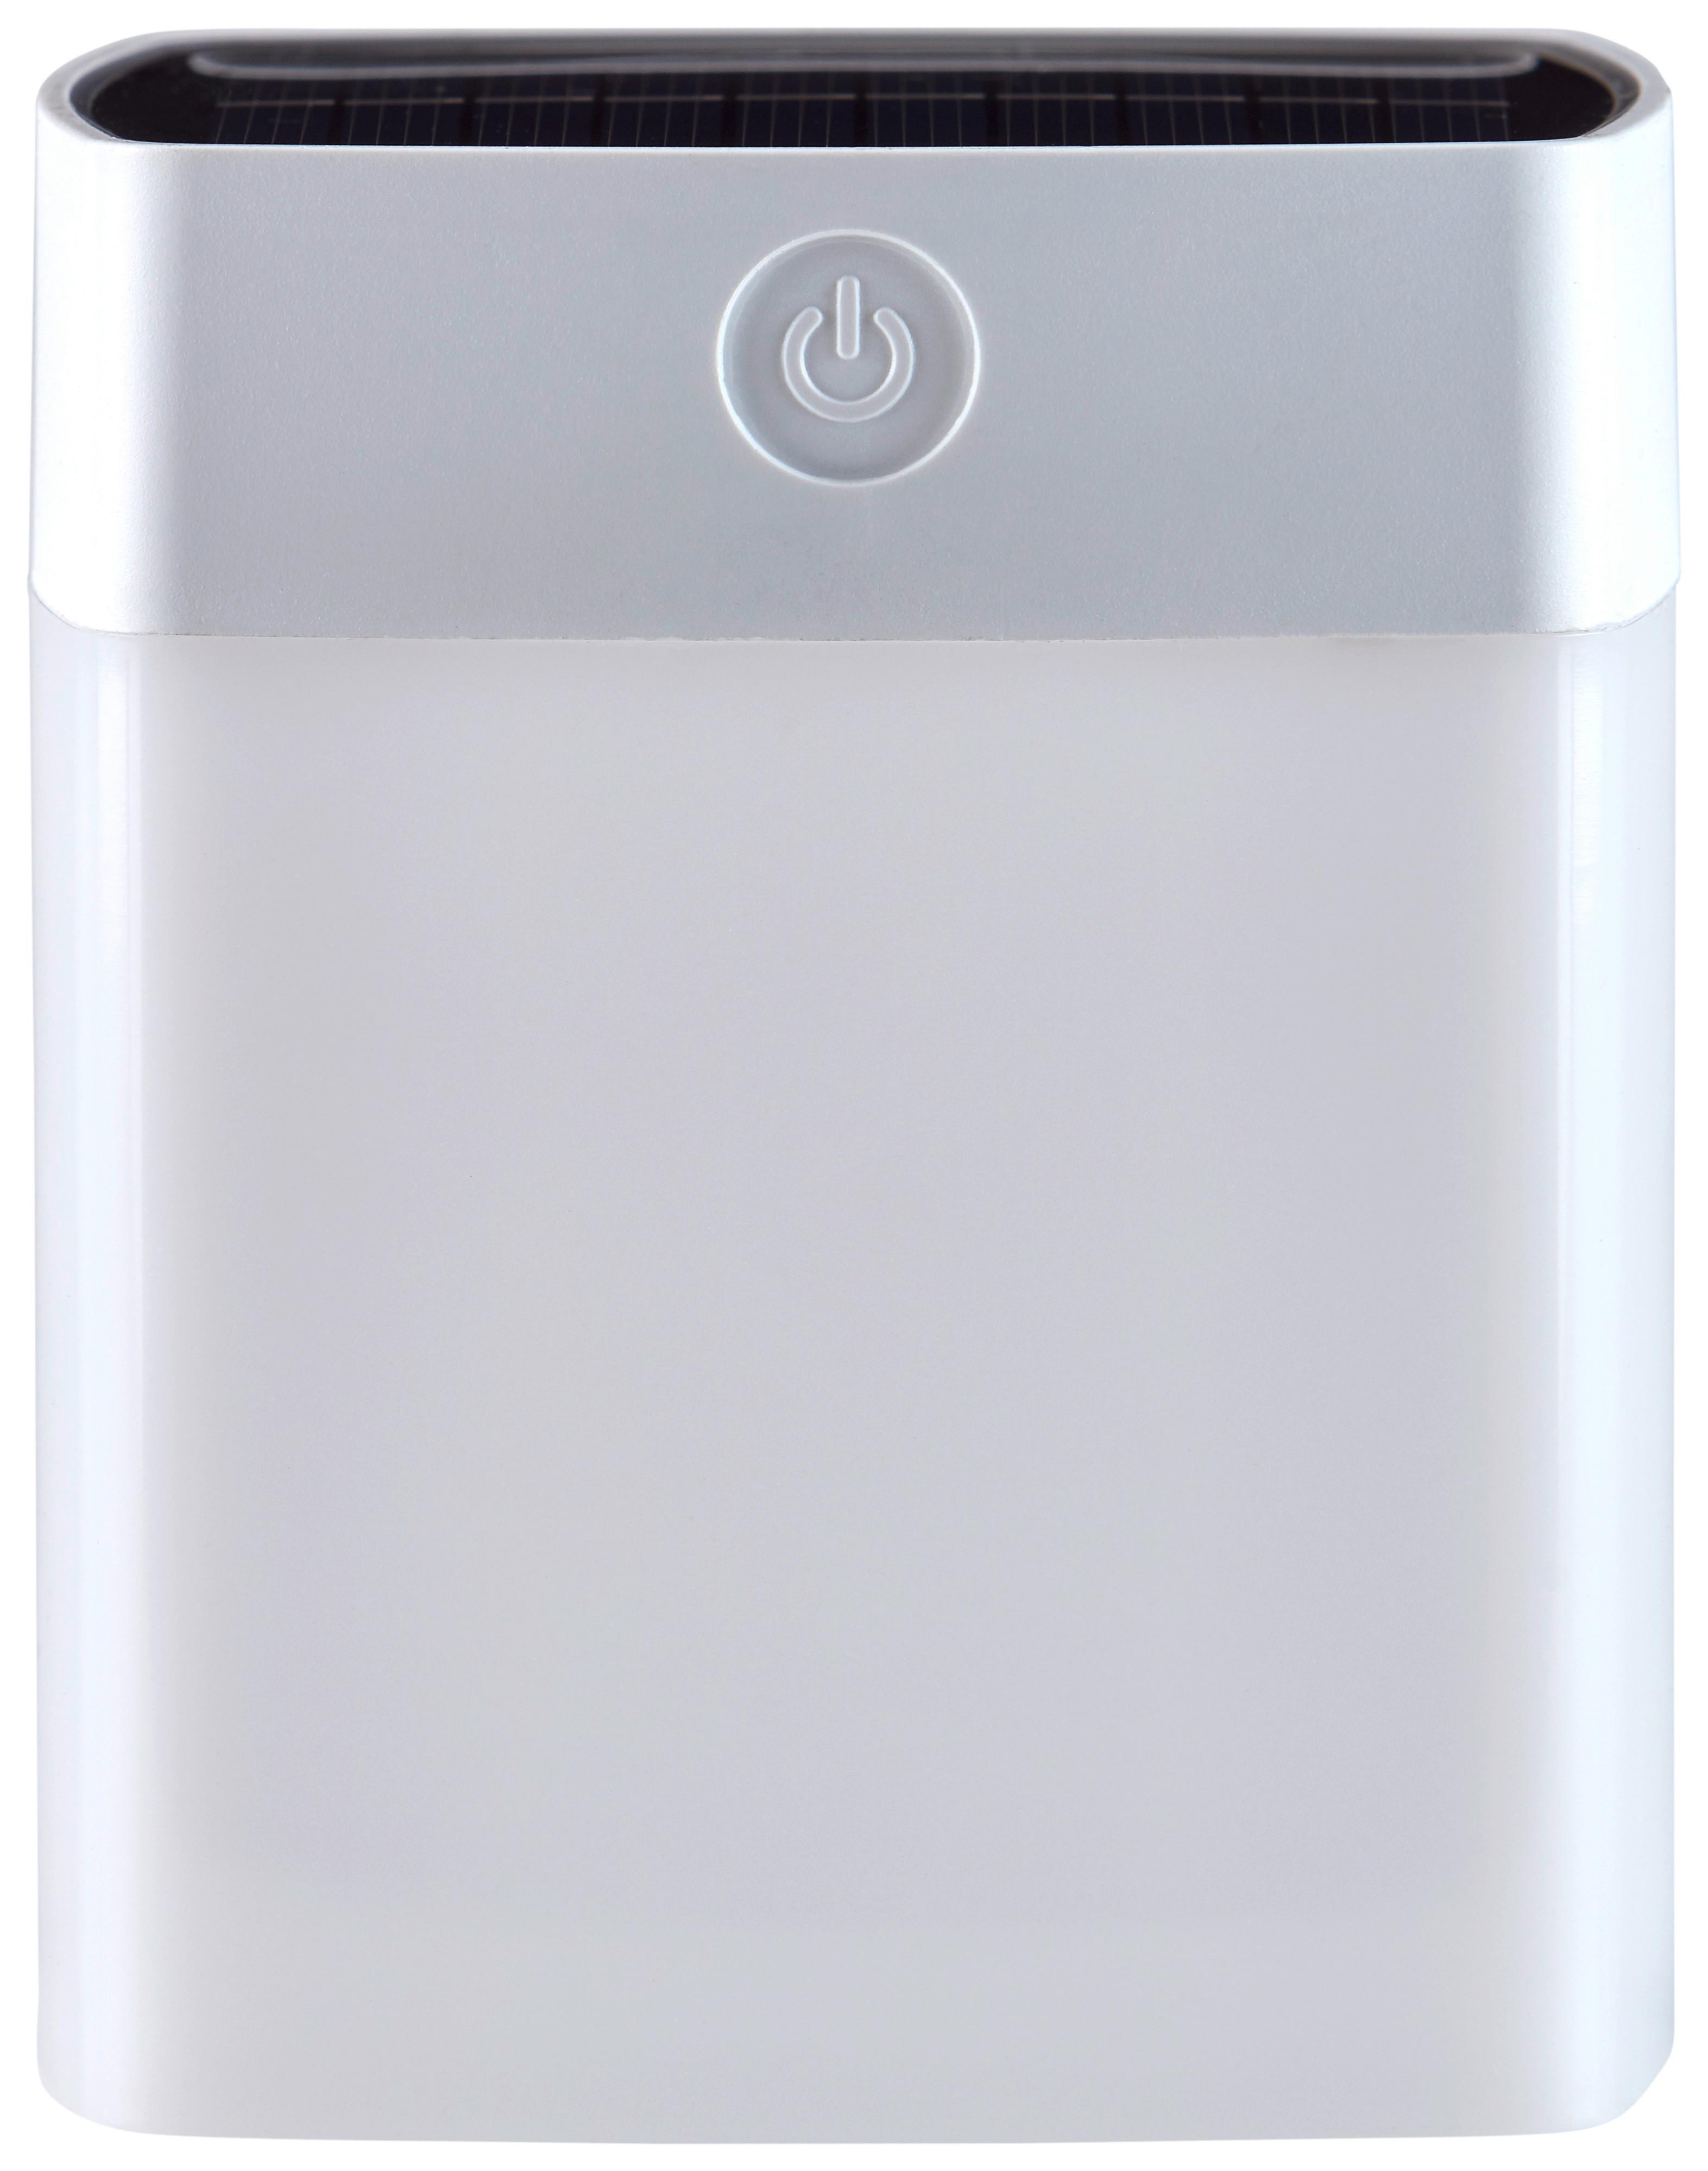 Solarleuchte Weiß Aenne 3xled Warmweiß H: 11cm - Weiß, KONVENTIONELL, Kunststoff (9/9/11cm) - Homezone